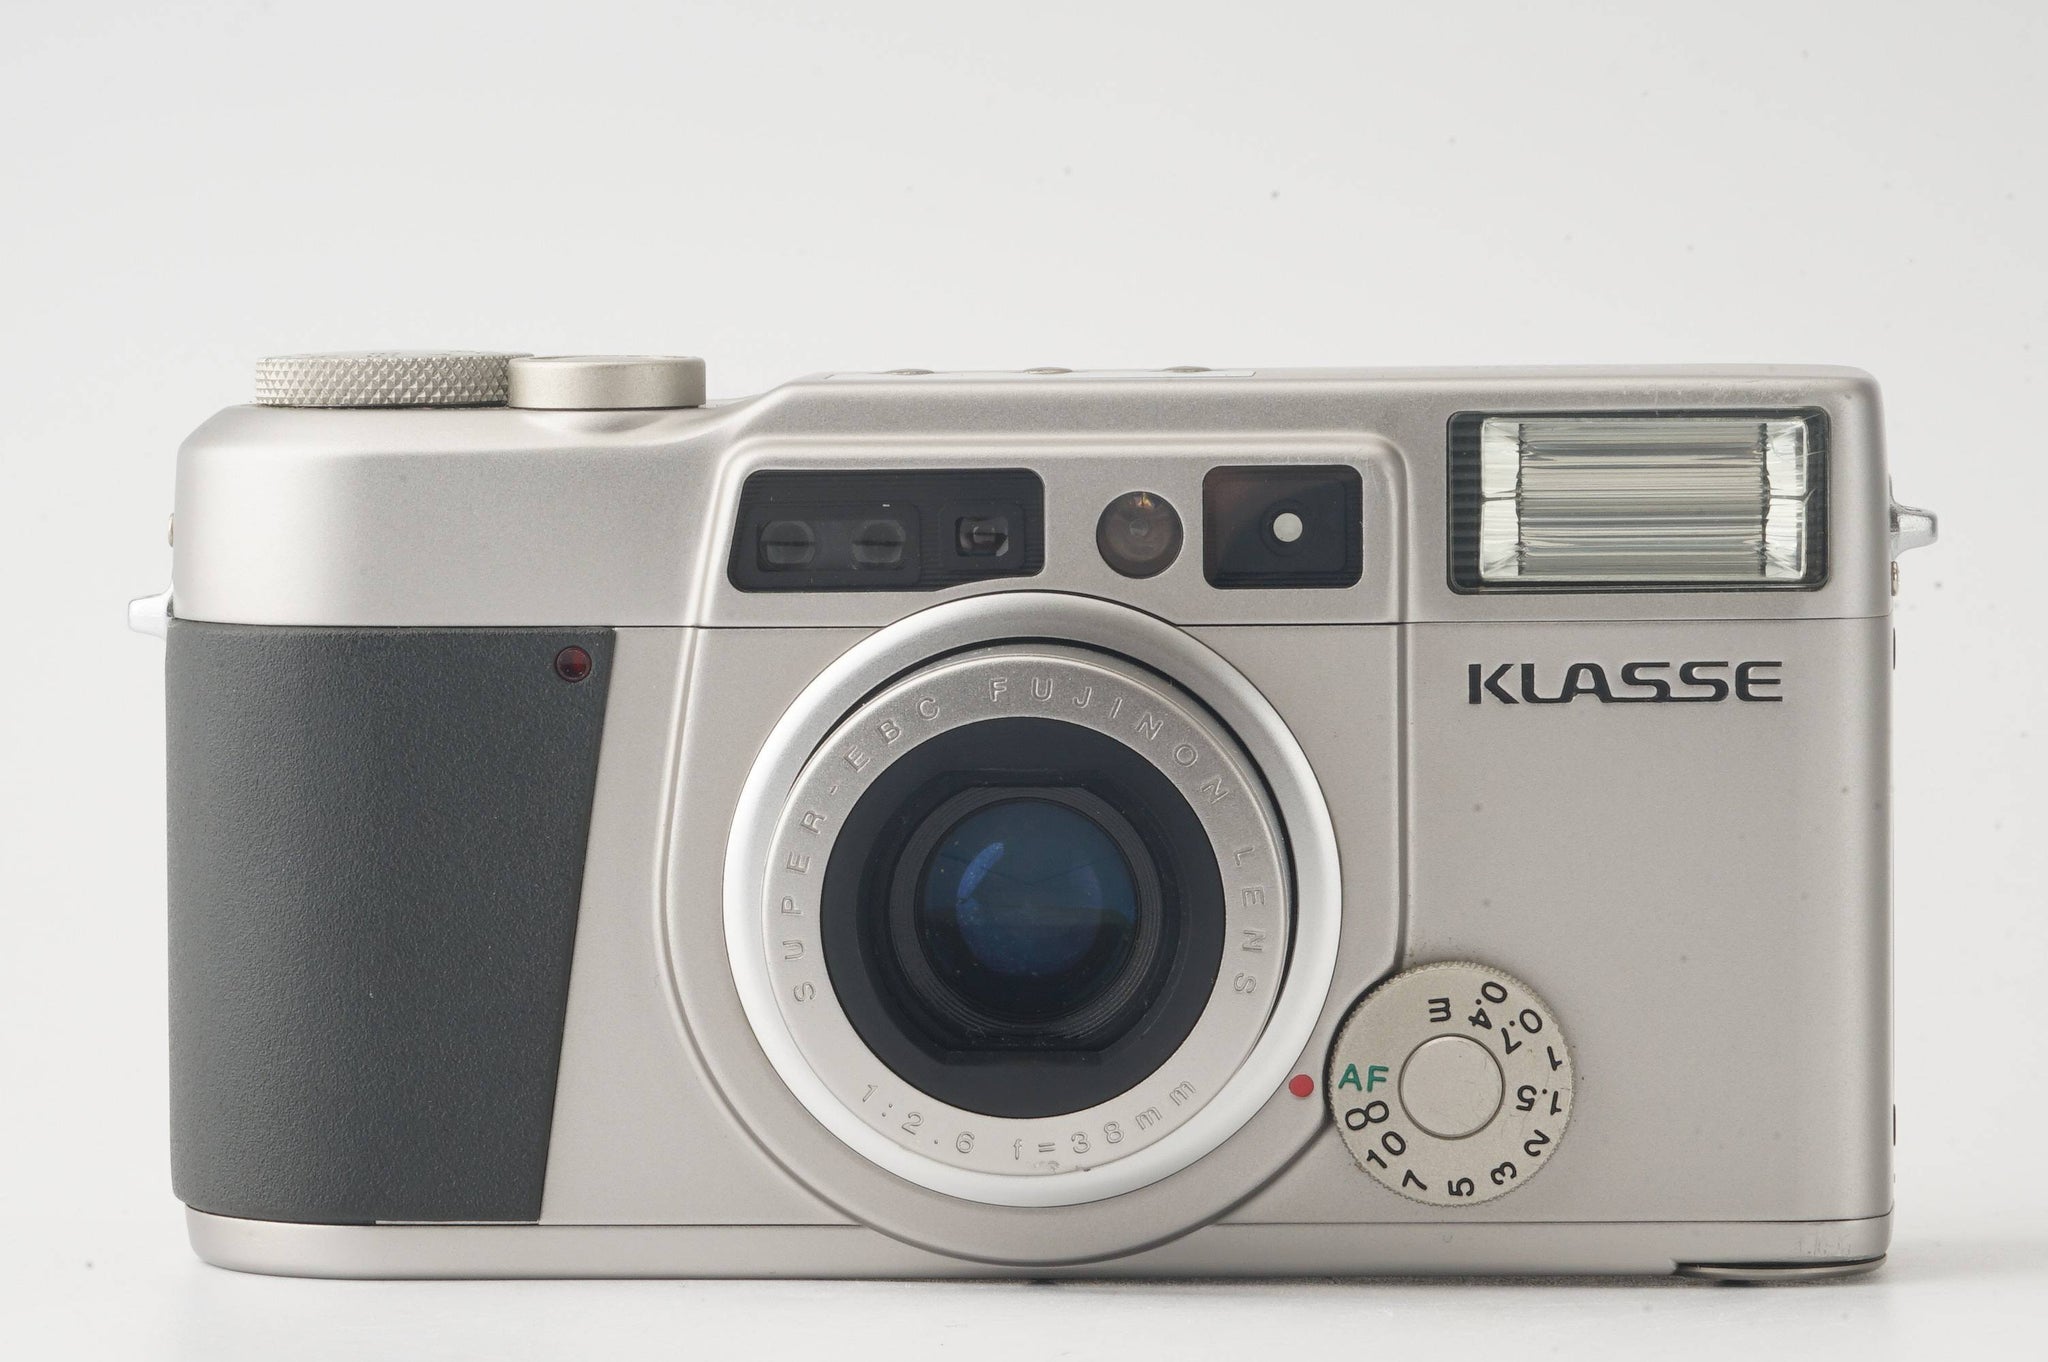 Fujifilm KLASSE / FUJINON LENS 38mm f/2.6 – Natural Camera